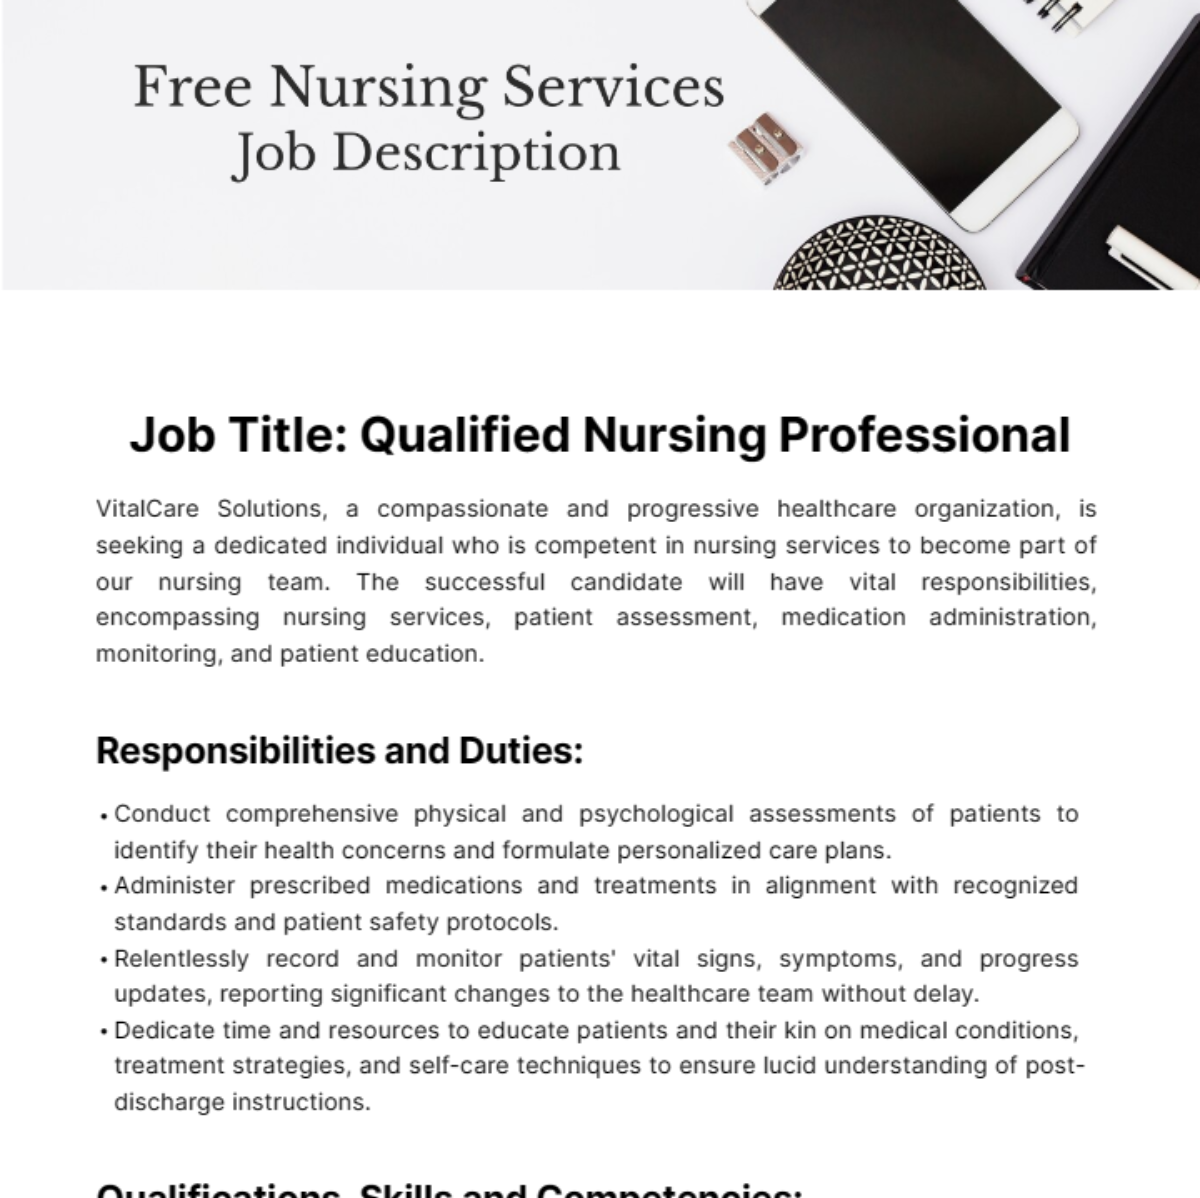 Free Nursing Services Job Description Template